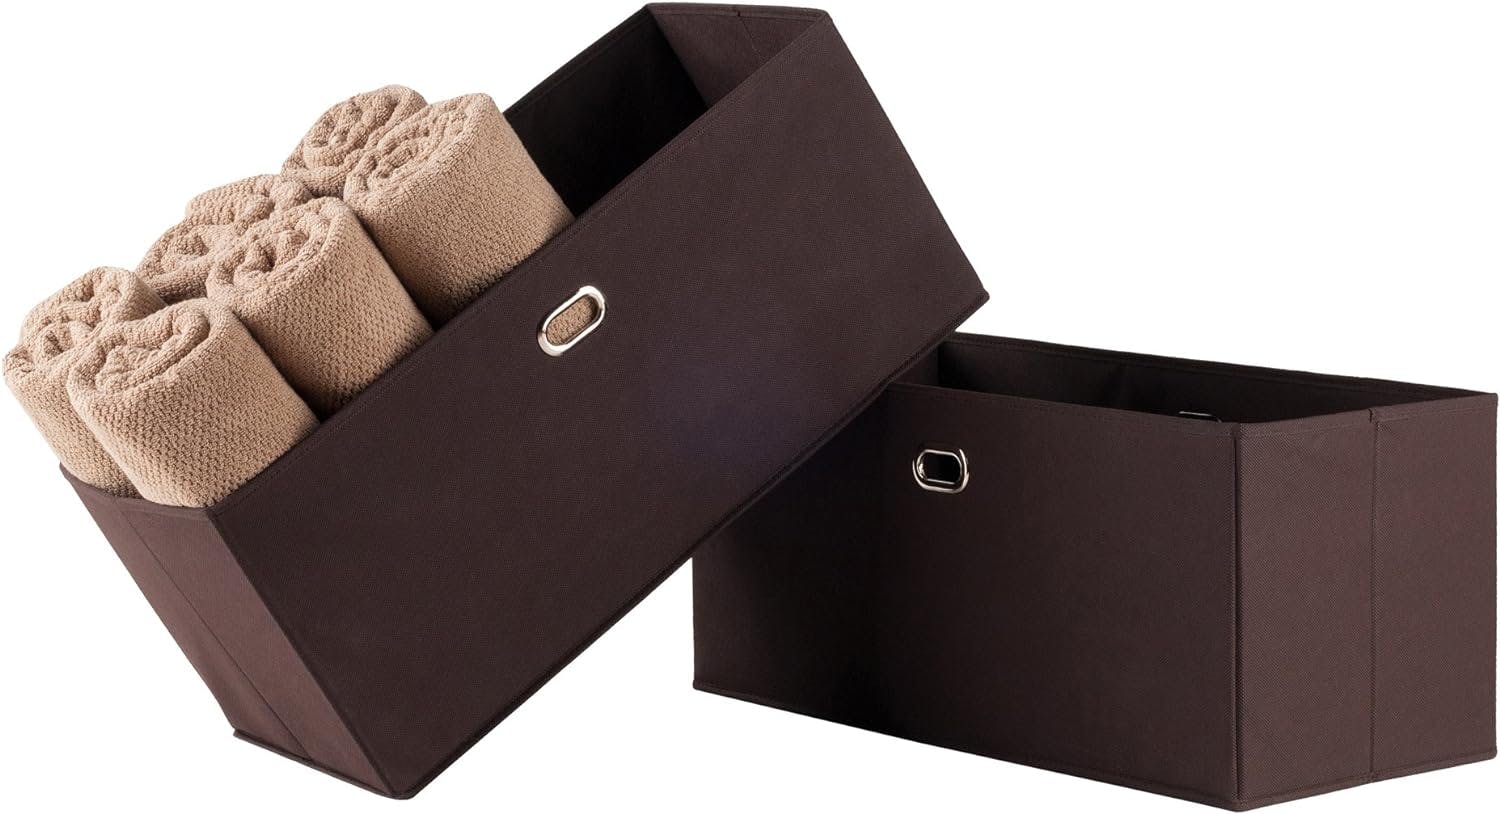 Coastal Chocolate Fabric Rectangular Storage Baskets - Set of 2